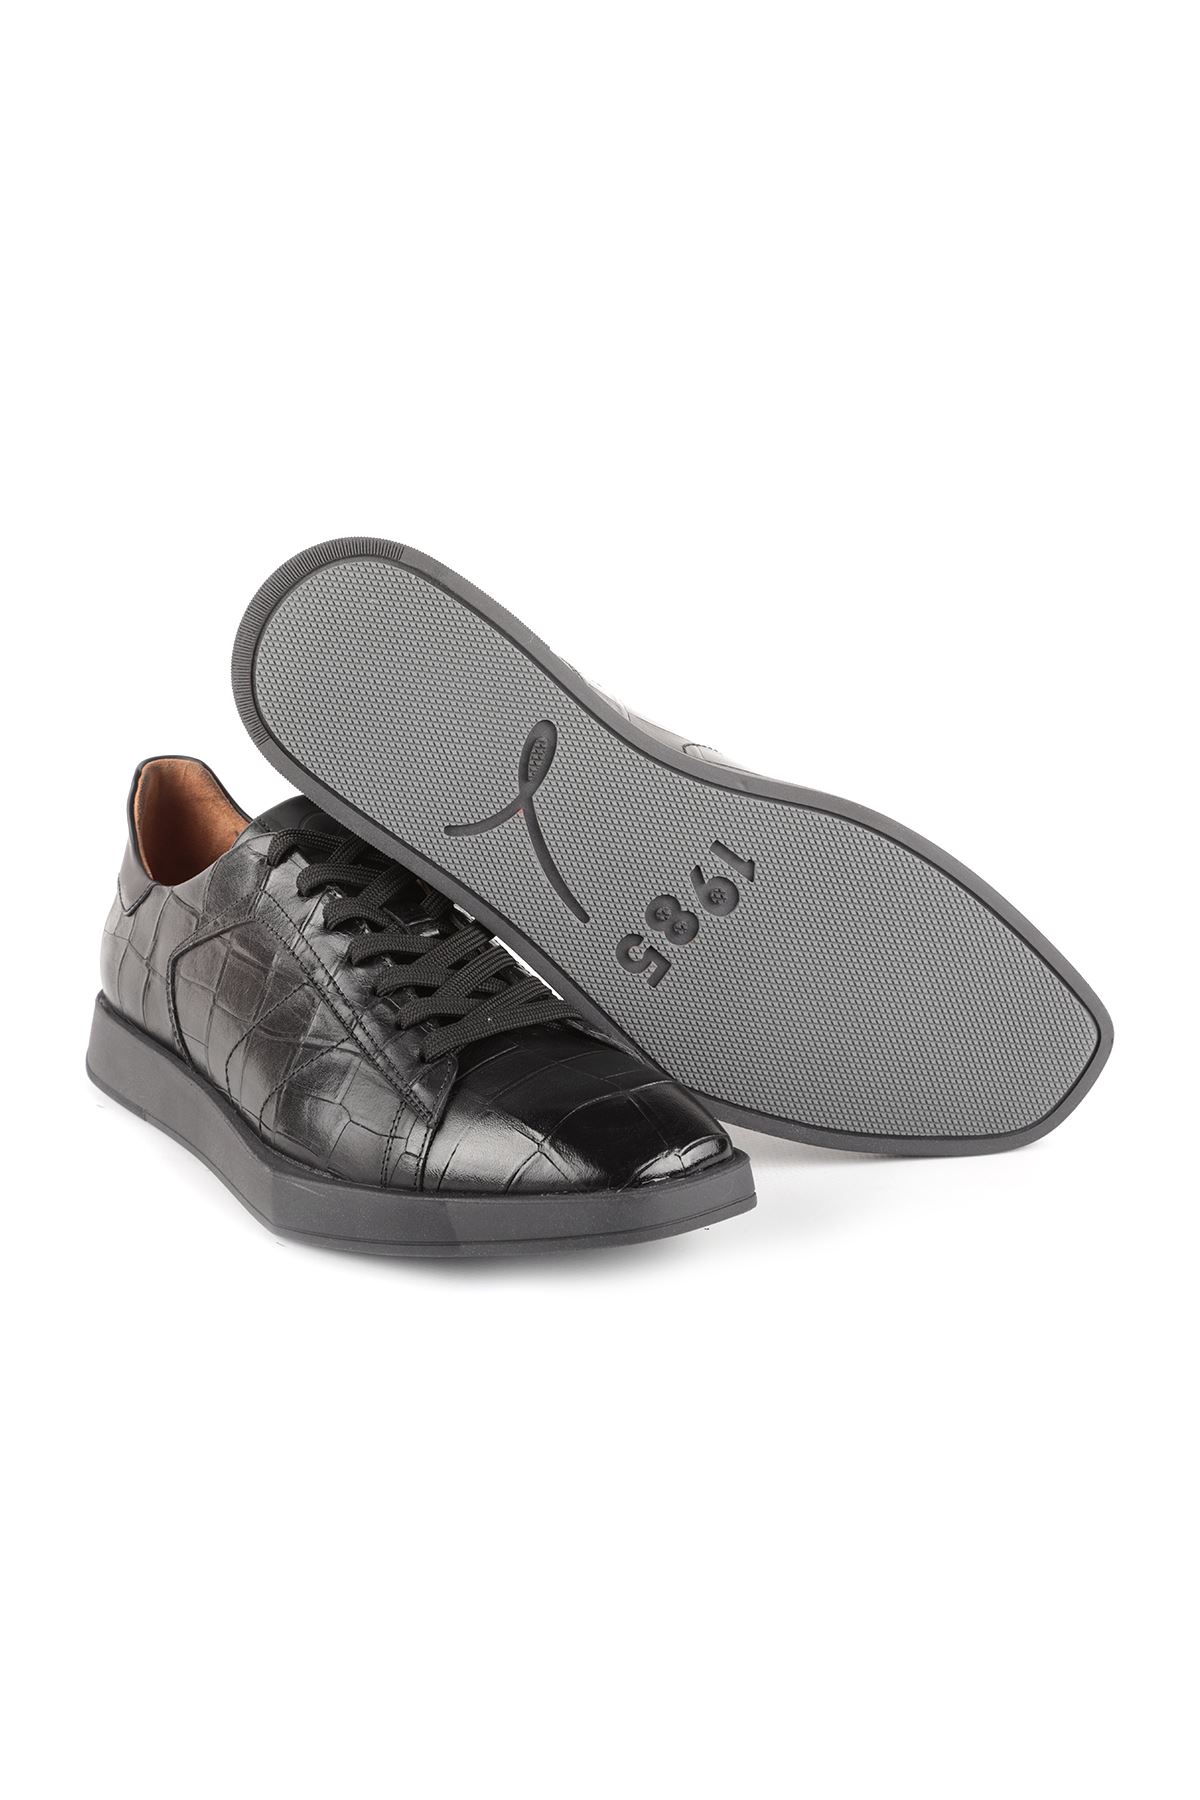 Libero L3805 Black Men Shoes